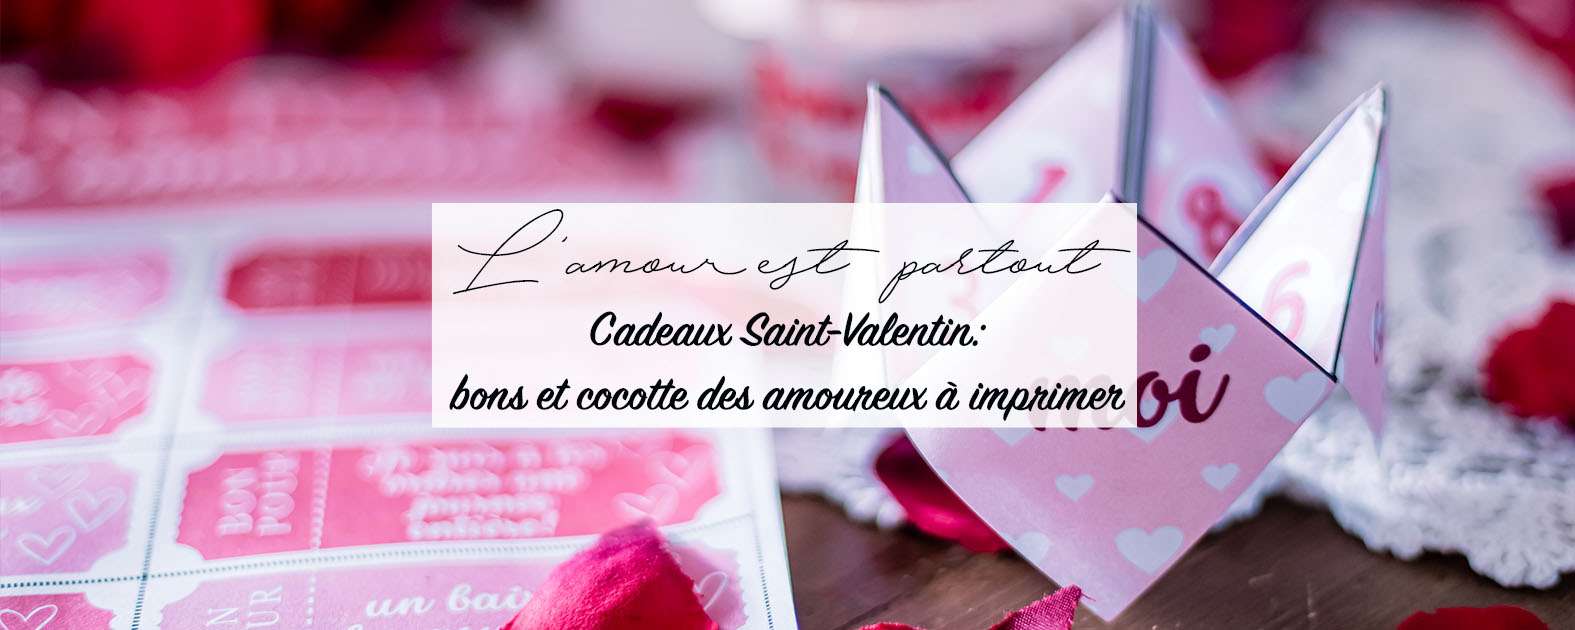 Cadeau Saint-Valentin: cocotte des amoureux et bons à imprimer